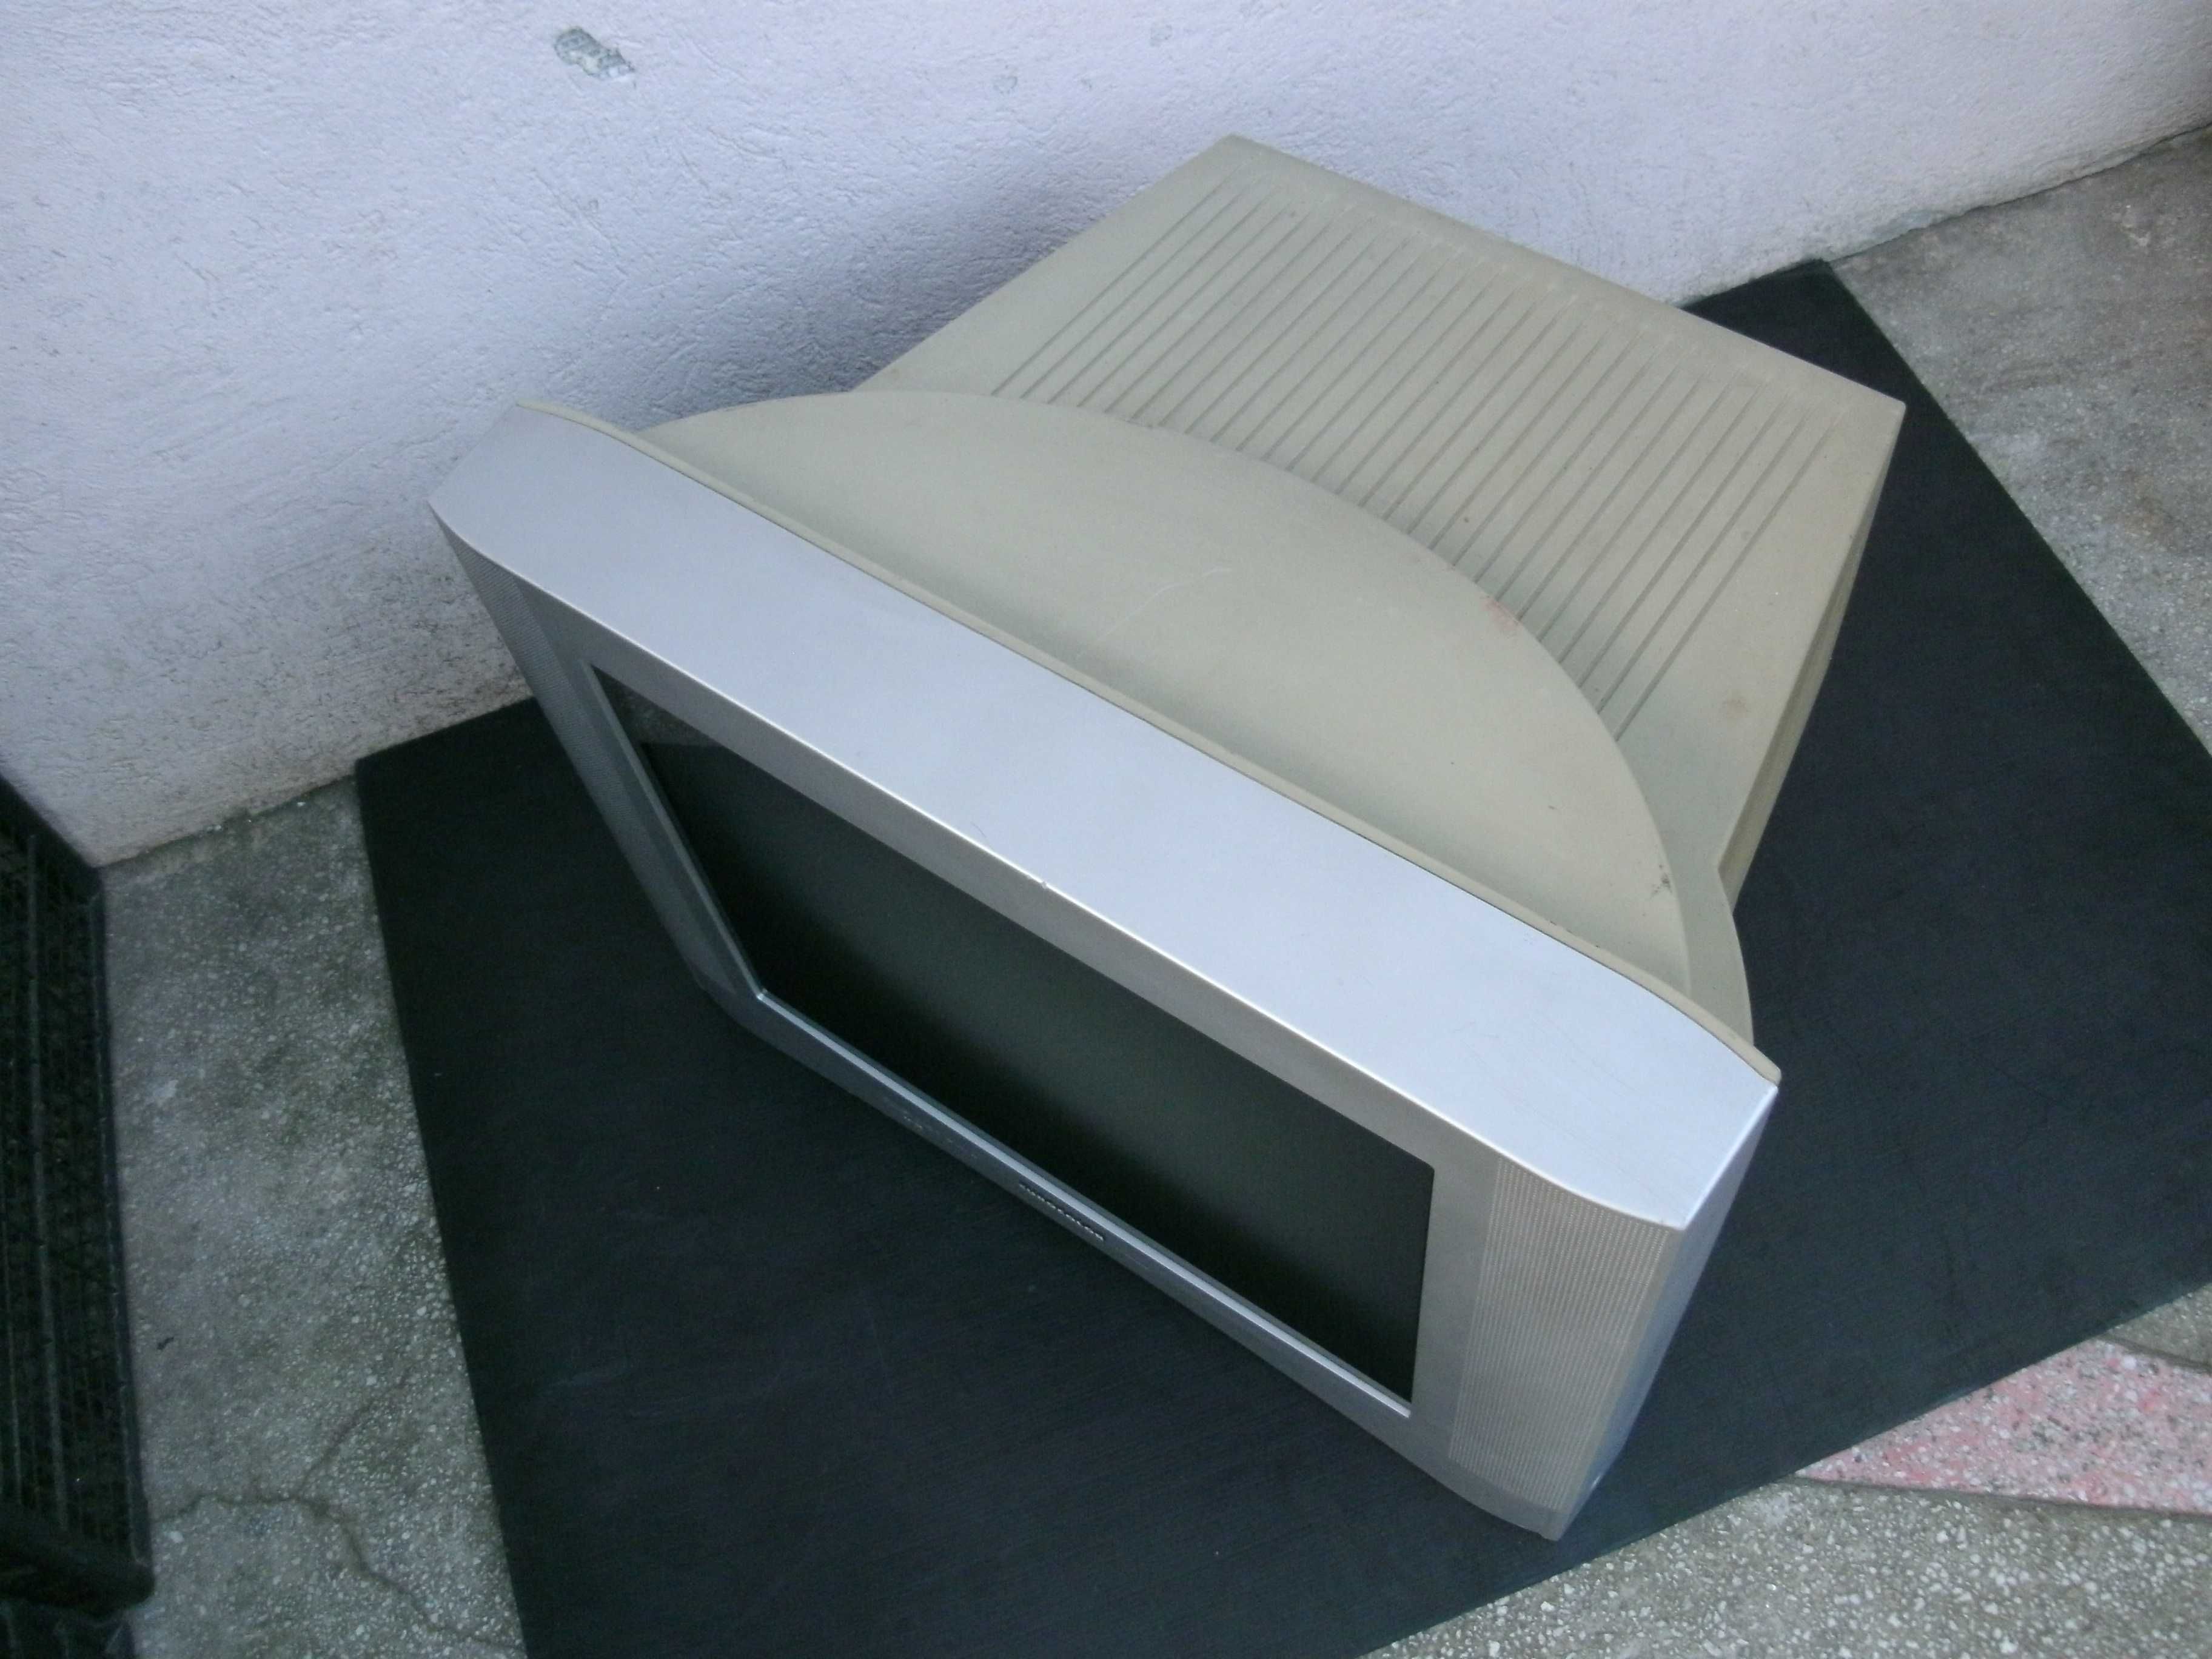 Televizor cu ecran plat de 54 cm